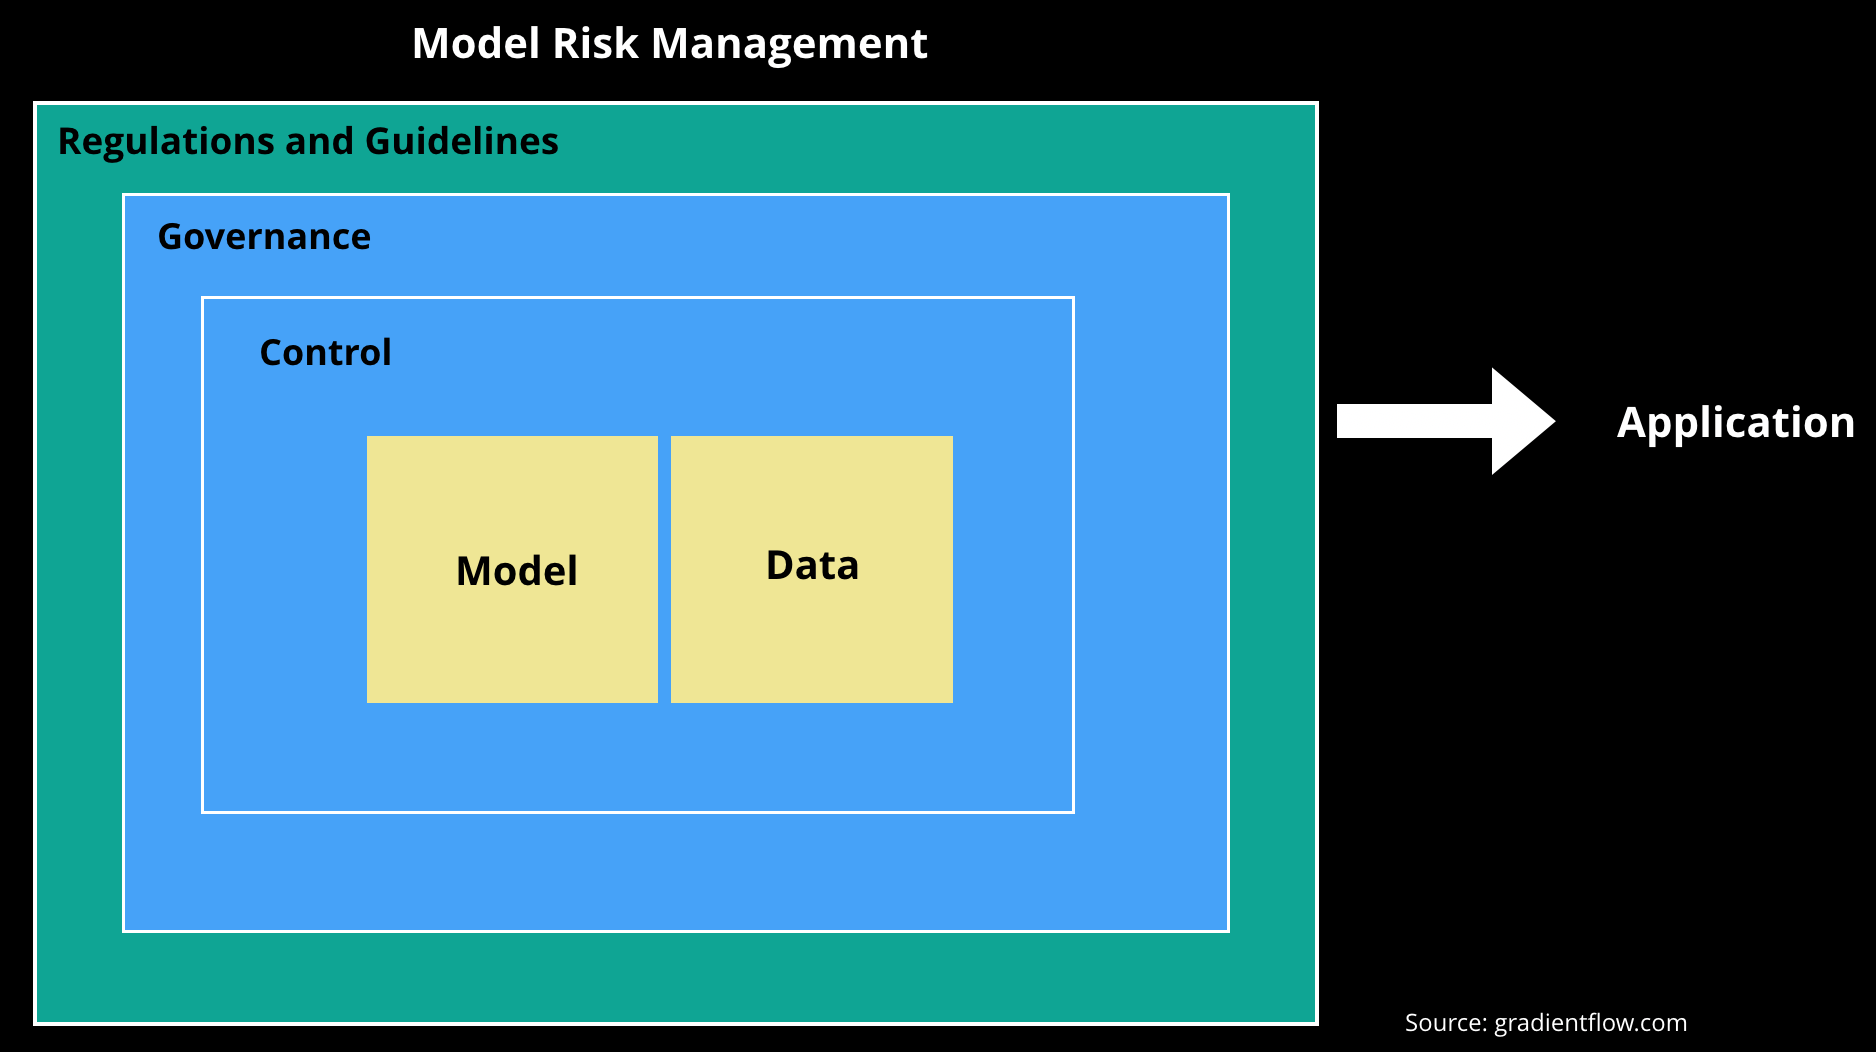 Model risk management